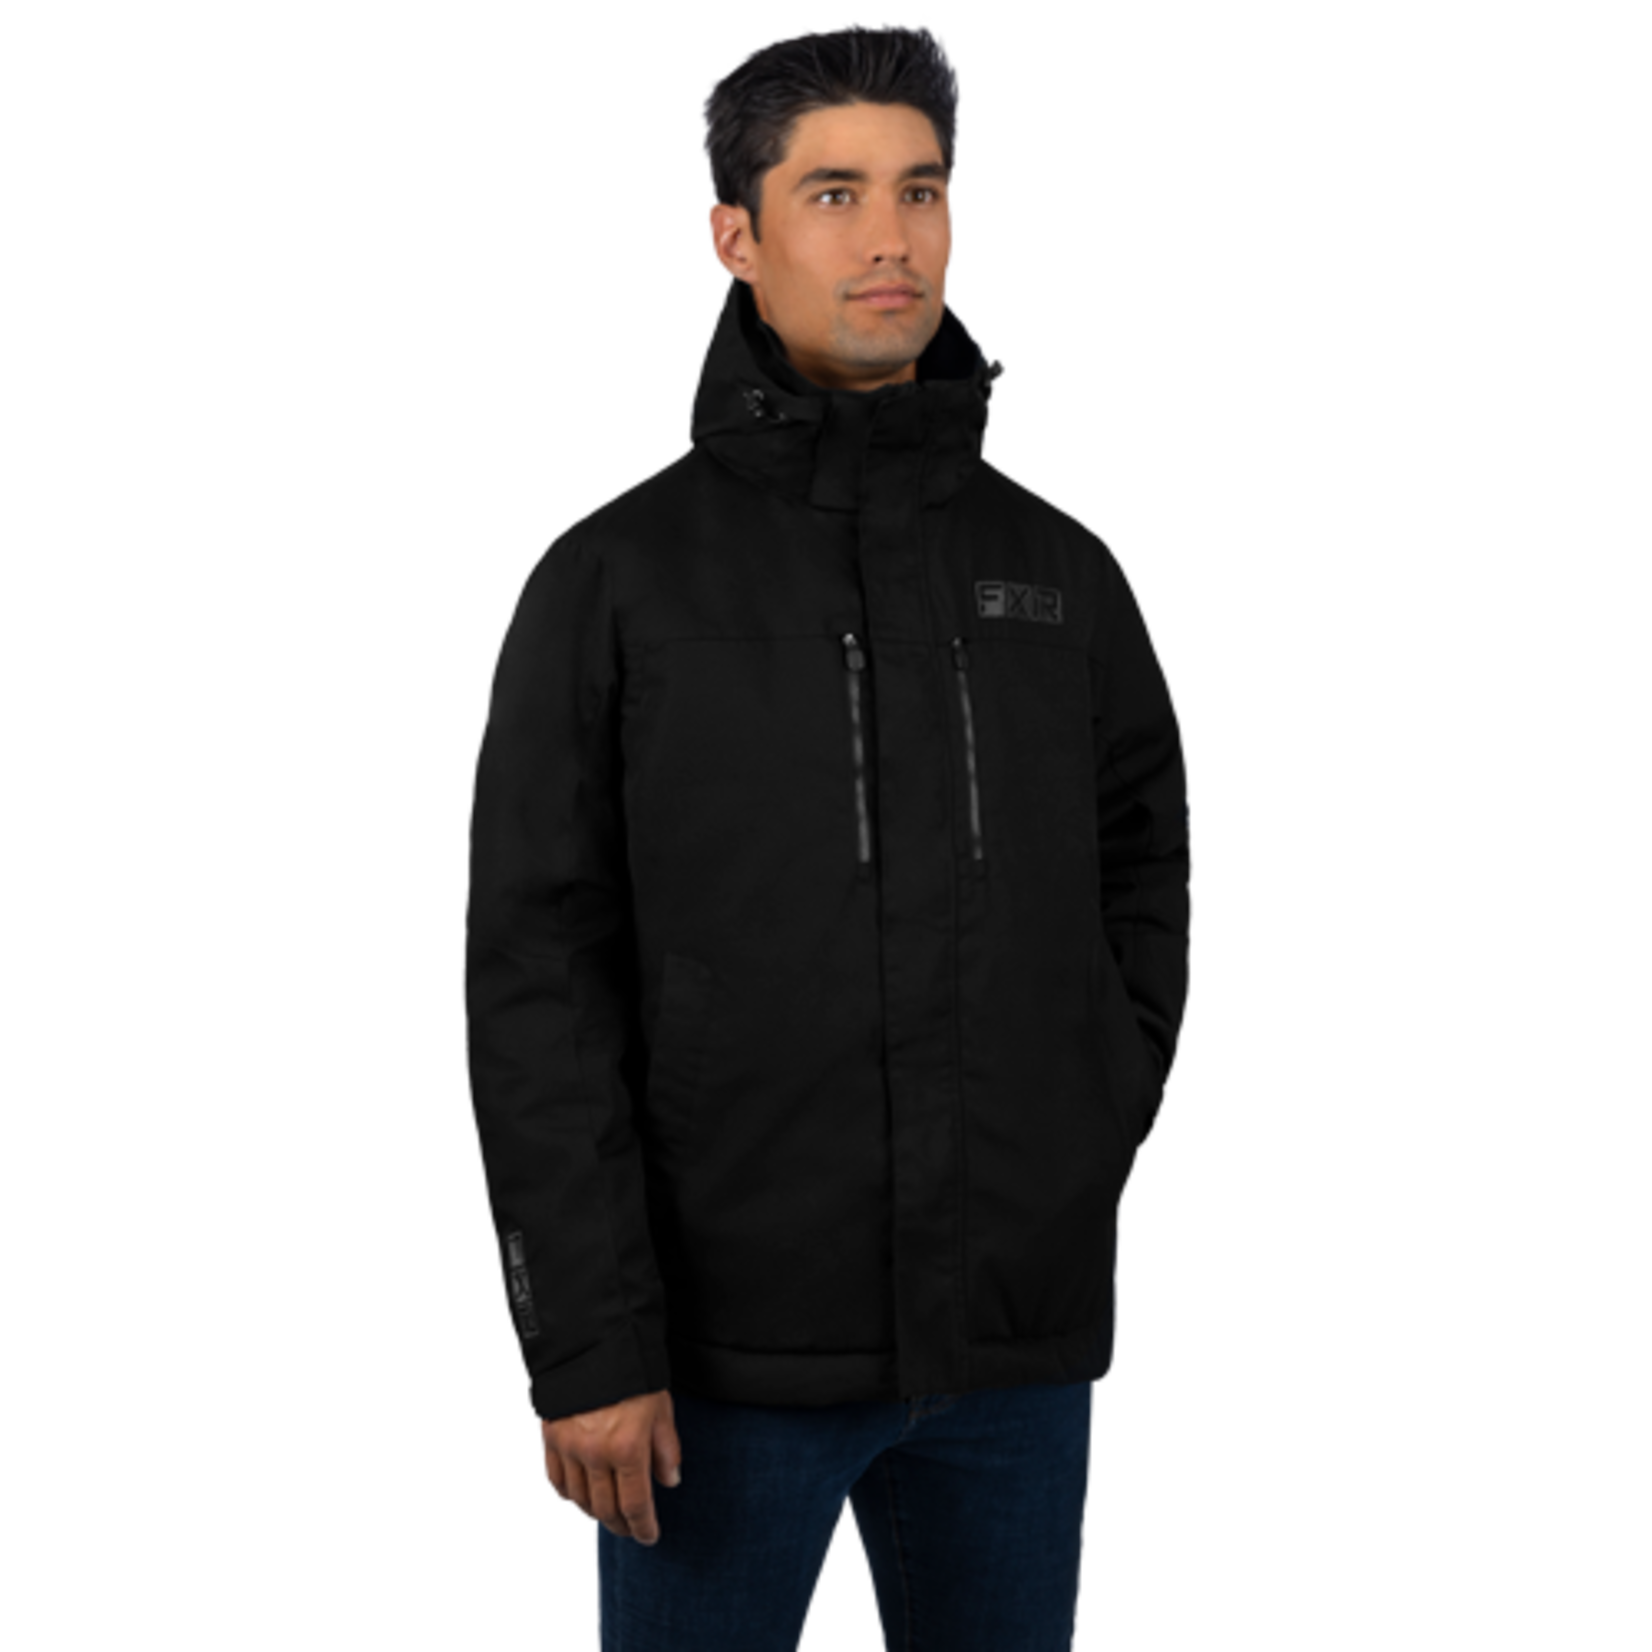 FXR FXR Winter Jacket, Northward, Mens